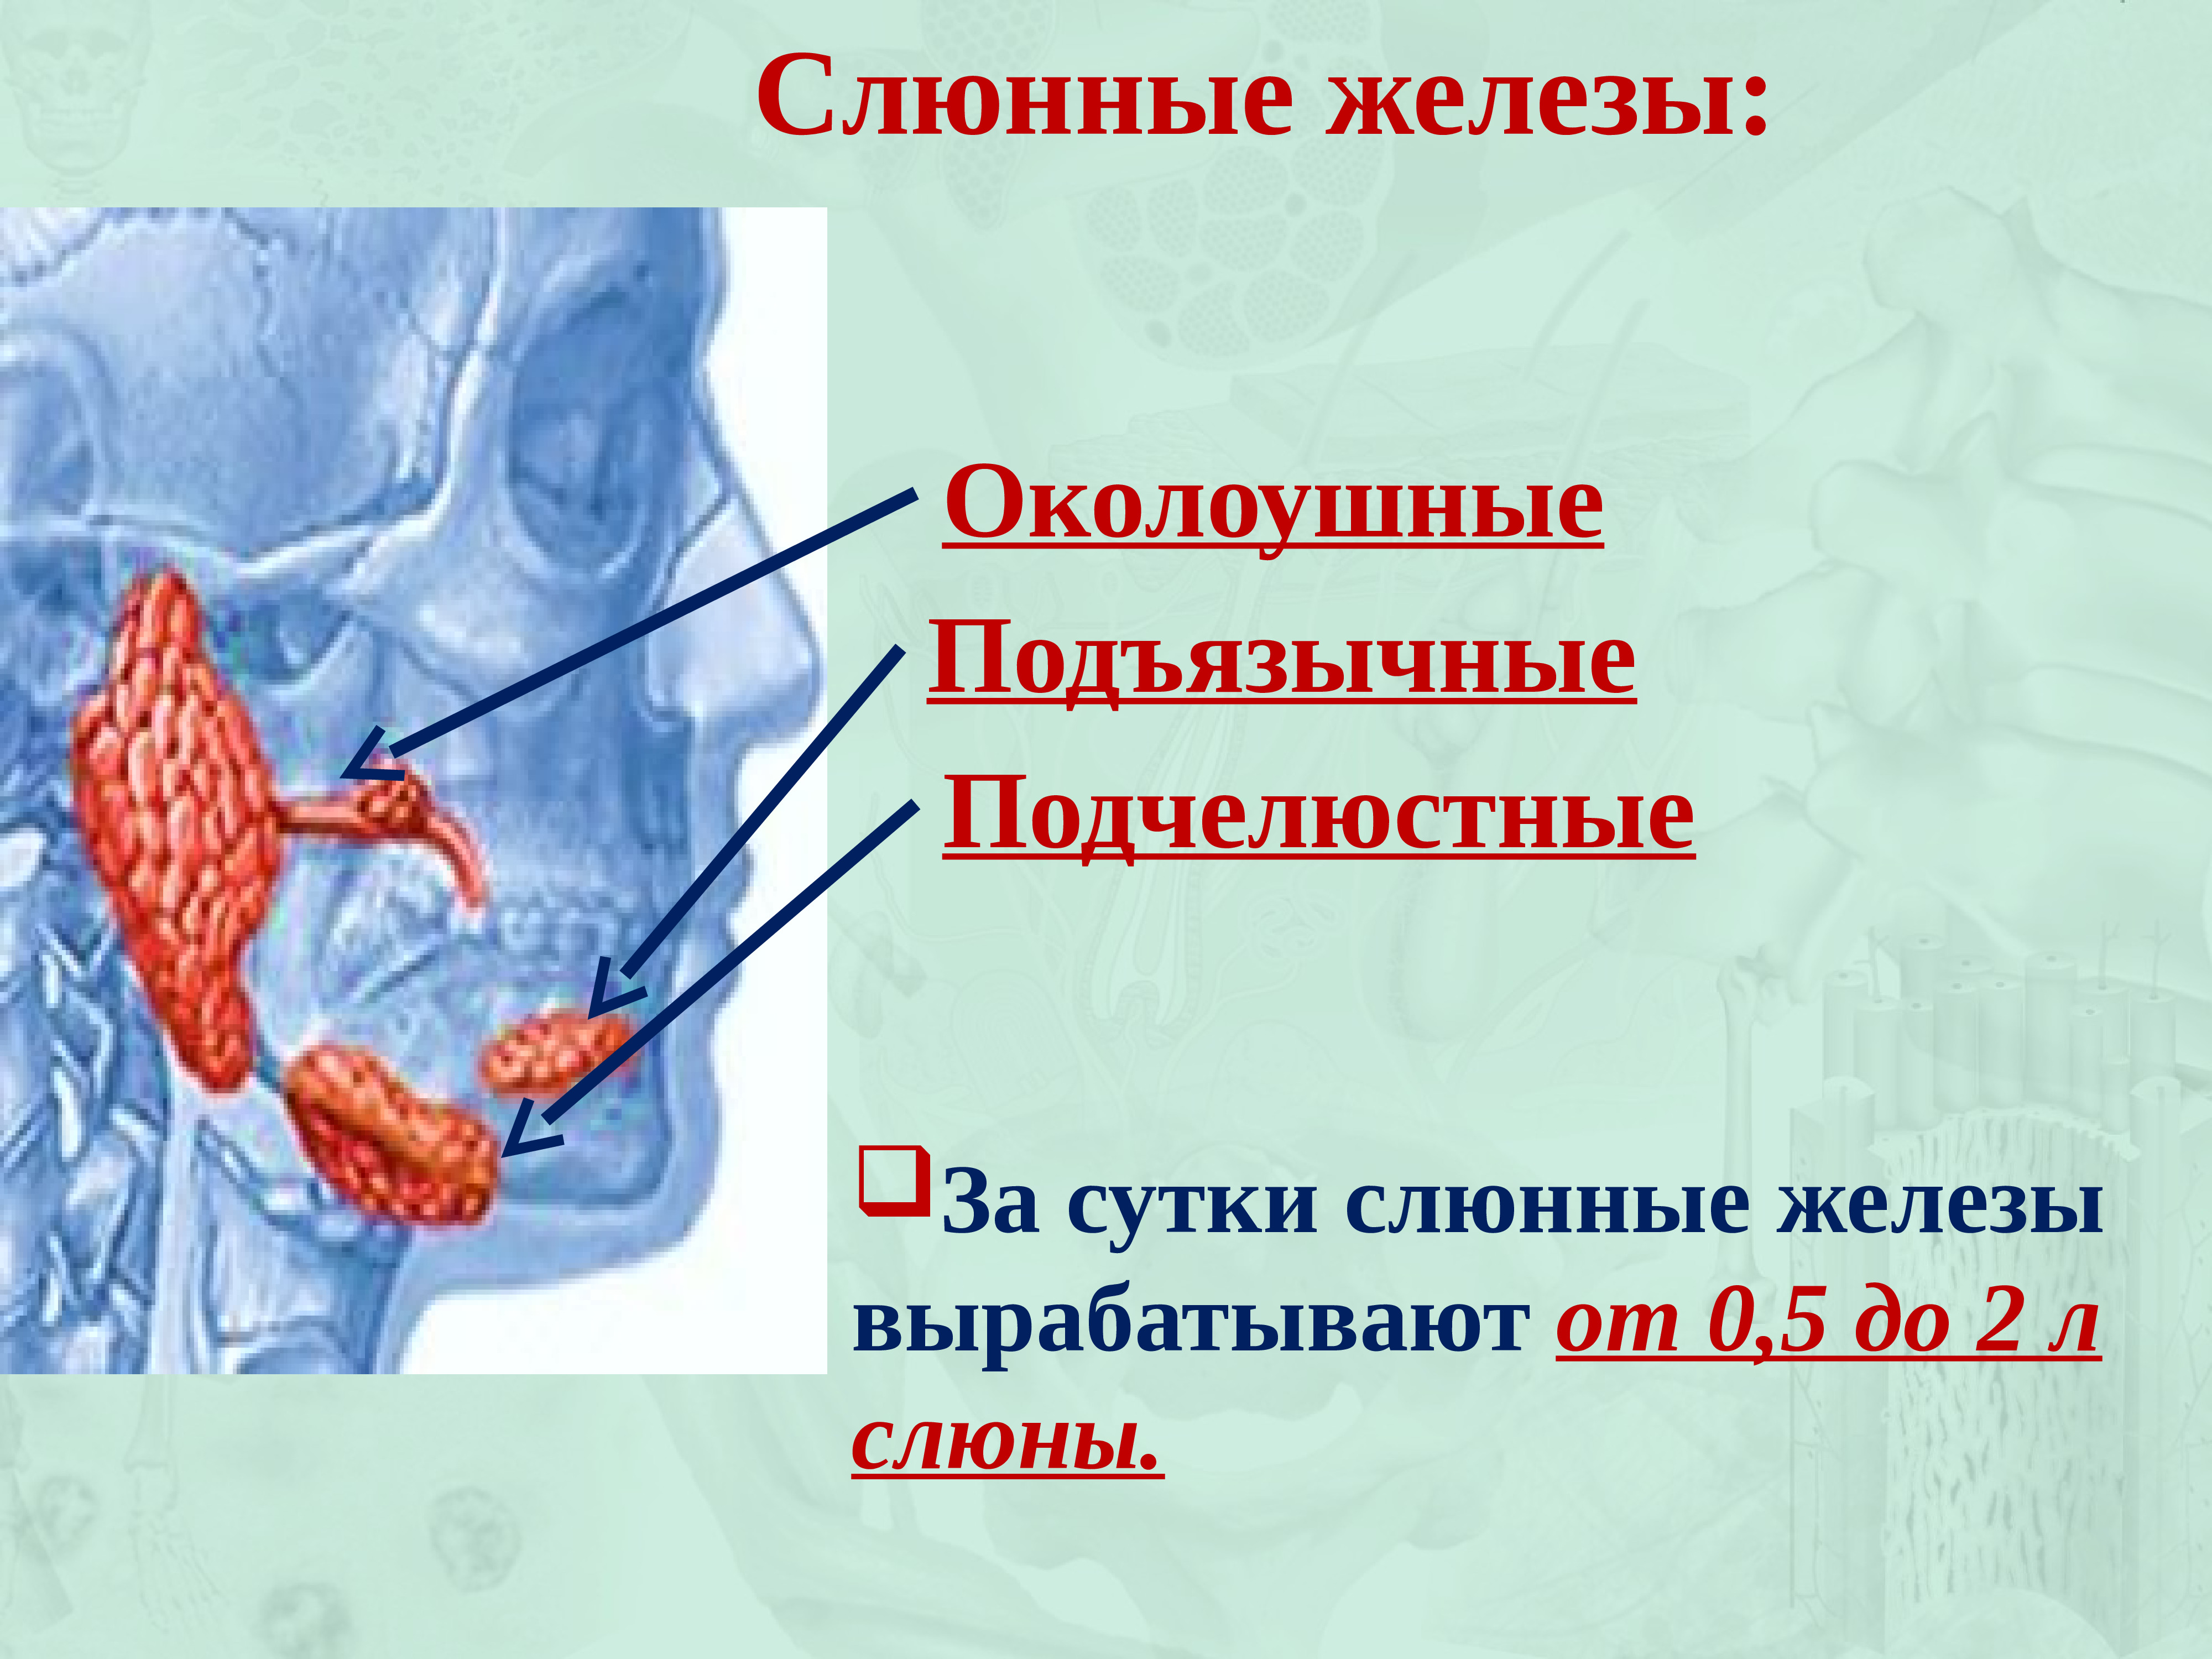 Ротовая полость пищеварительный сок. Околоушная слюнные железы анатомия человека. Слюнная околоушная слюнная железа. Слюнные железы презентация.